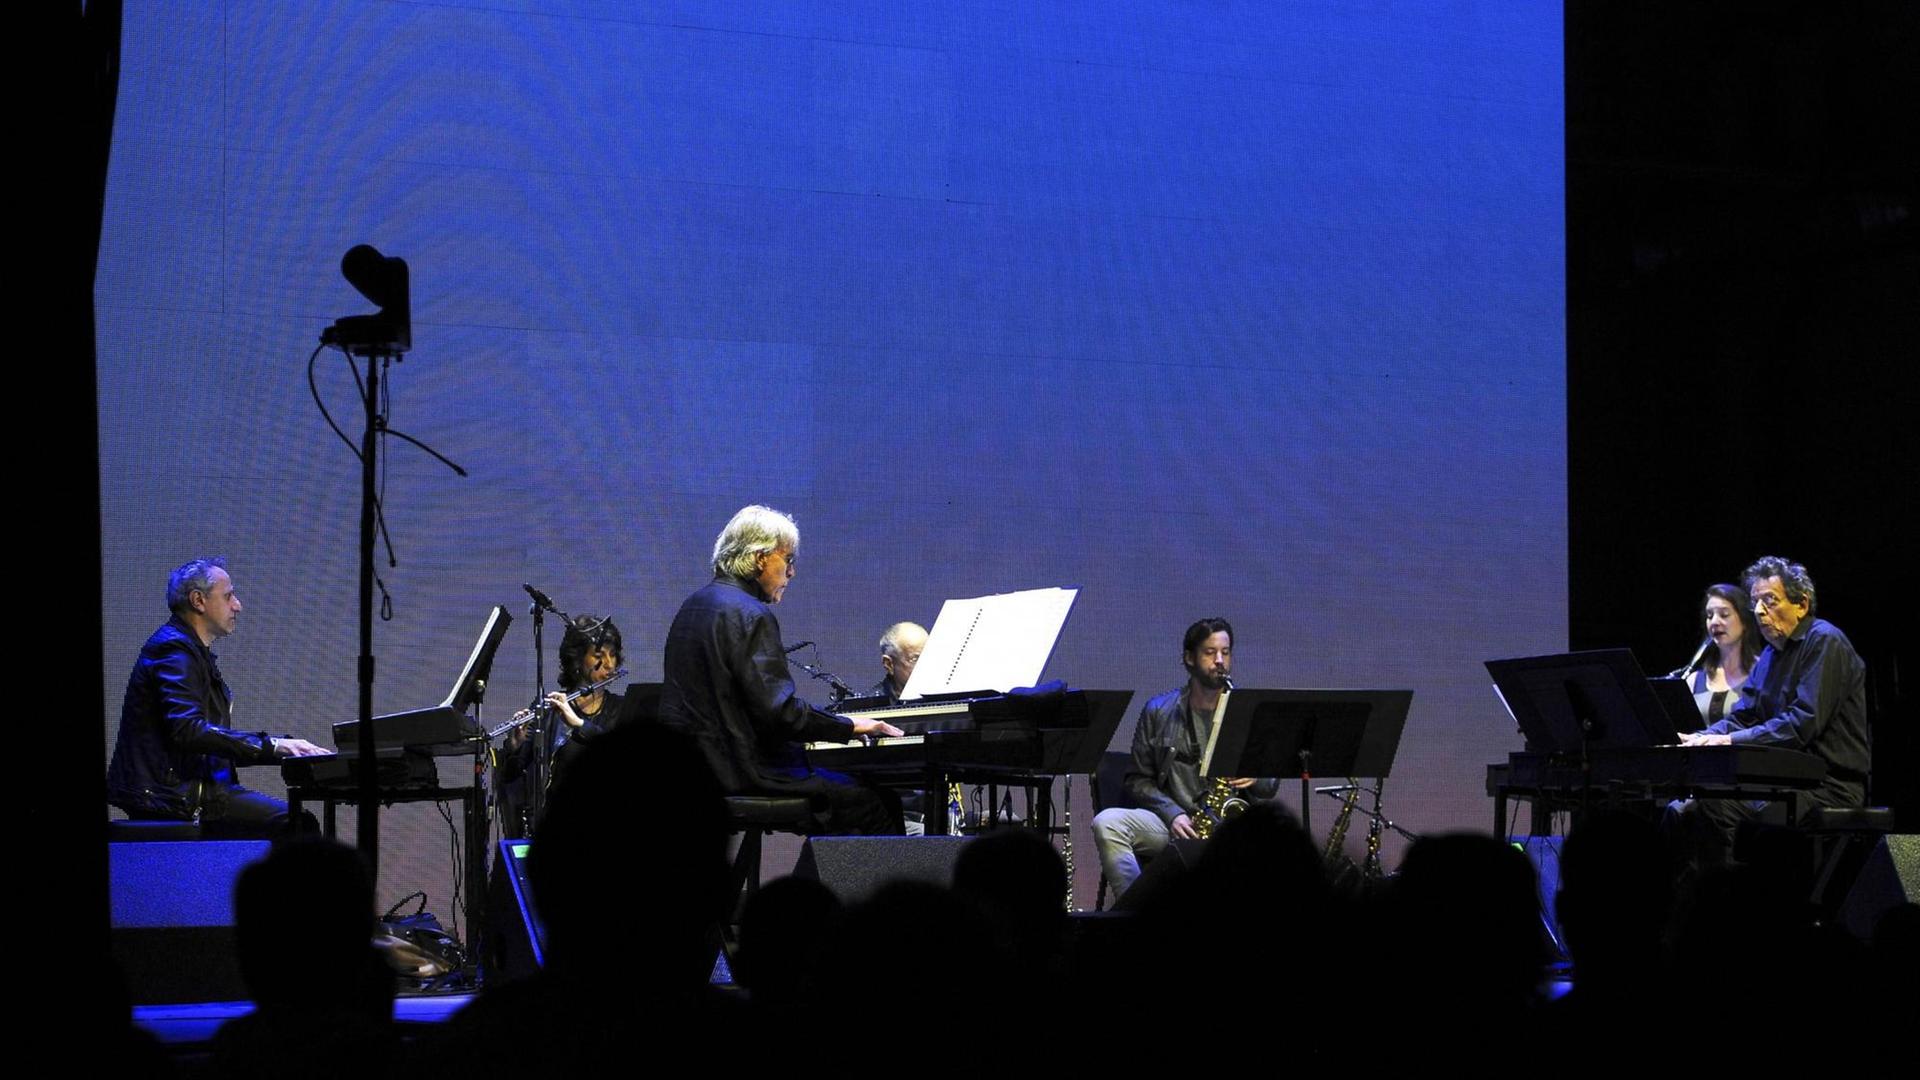 The Phillip Glass Ensemble live auf dem Day For Night Festival 2015 rund um die Silver Street Studios in Houston, 19.12.2015 Das Ensemble spielt auf der Bühne vor einer blau beleuchteten Leinwand rechts am Keyboard sitzt der Komponist und Musiker Philip Glass